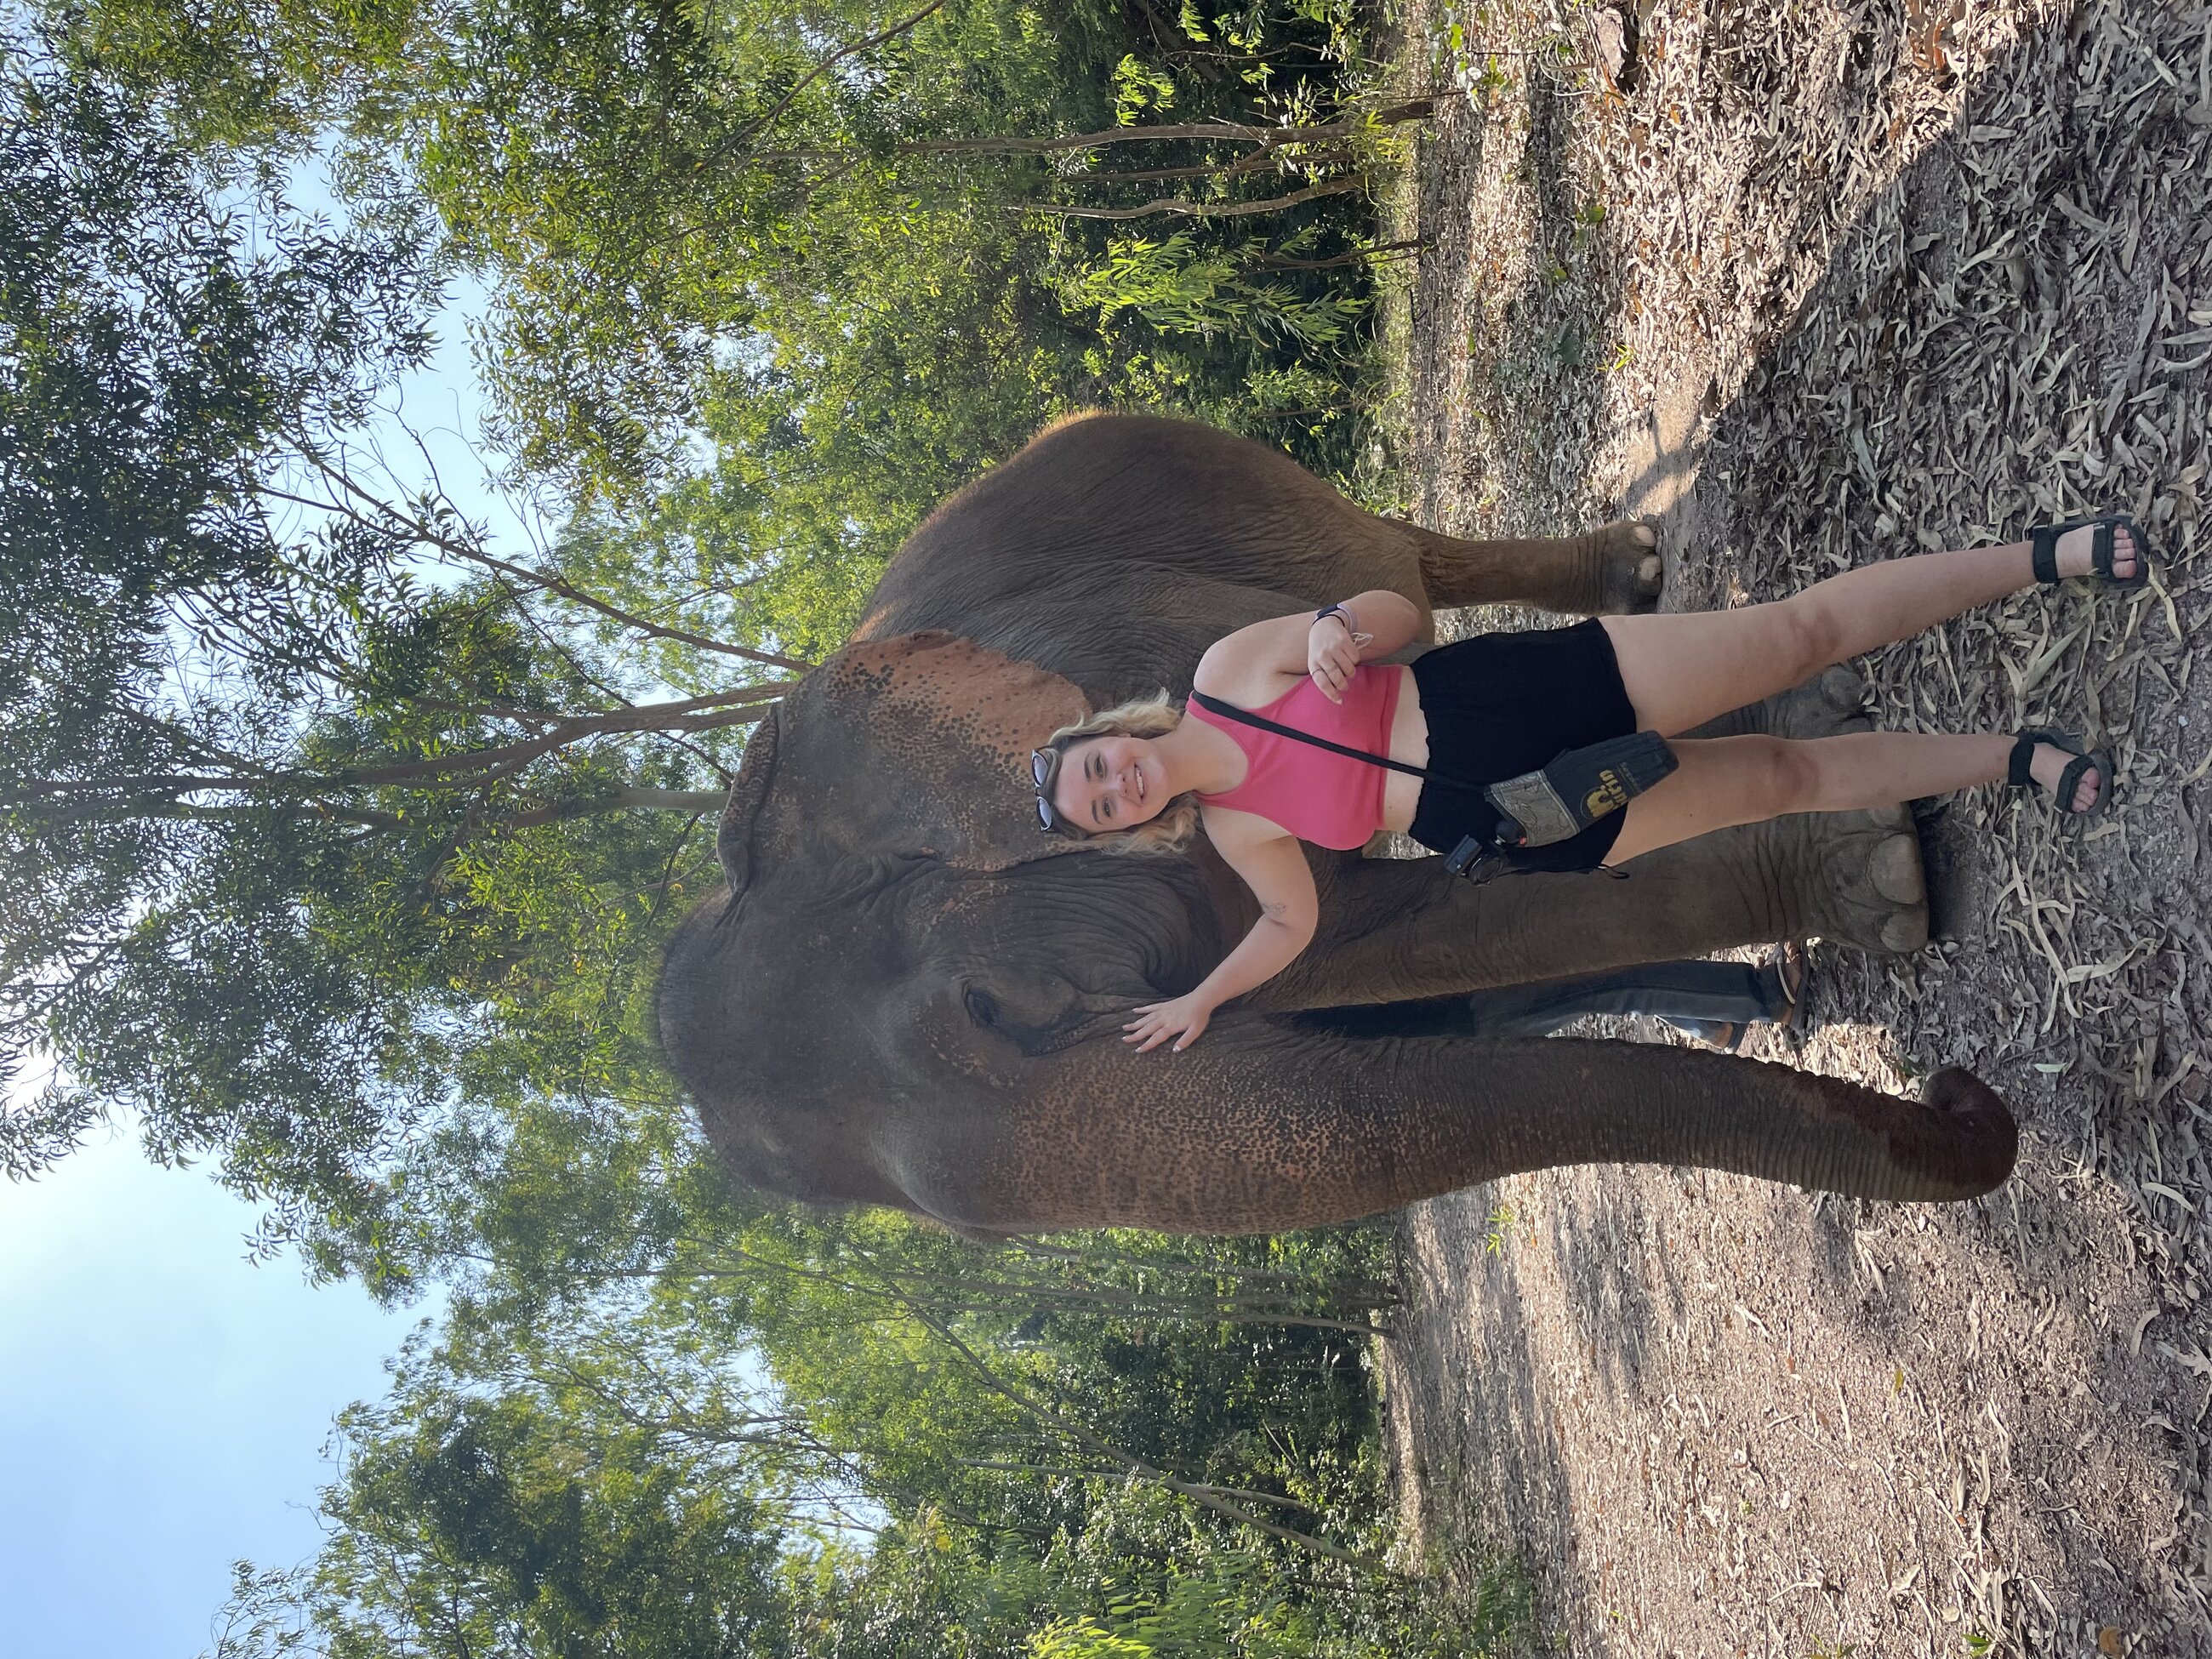 Pattaya Elephant Sanctuary